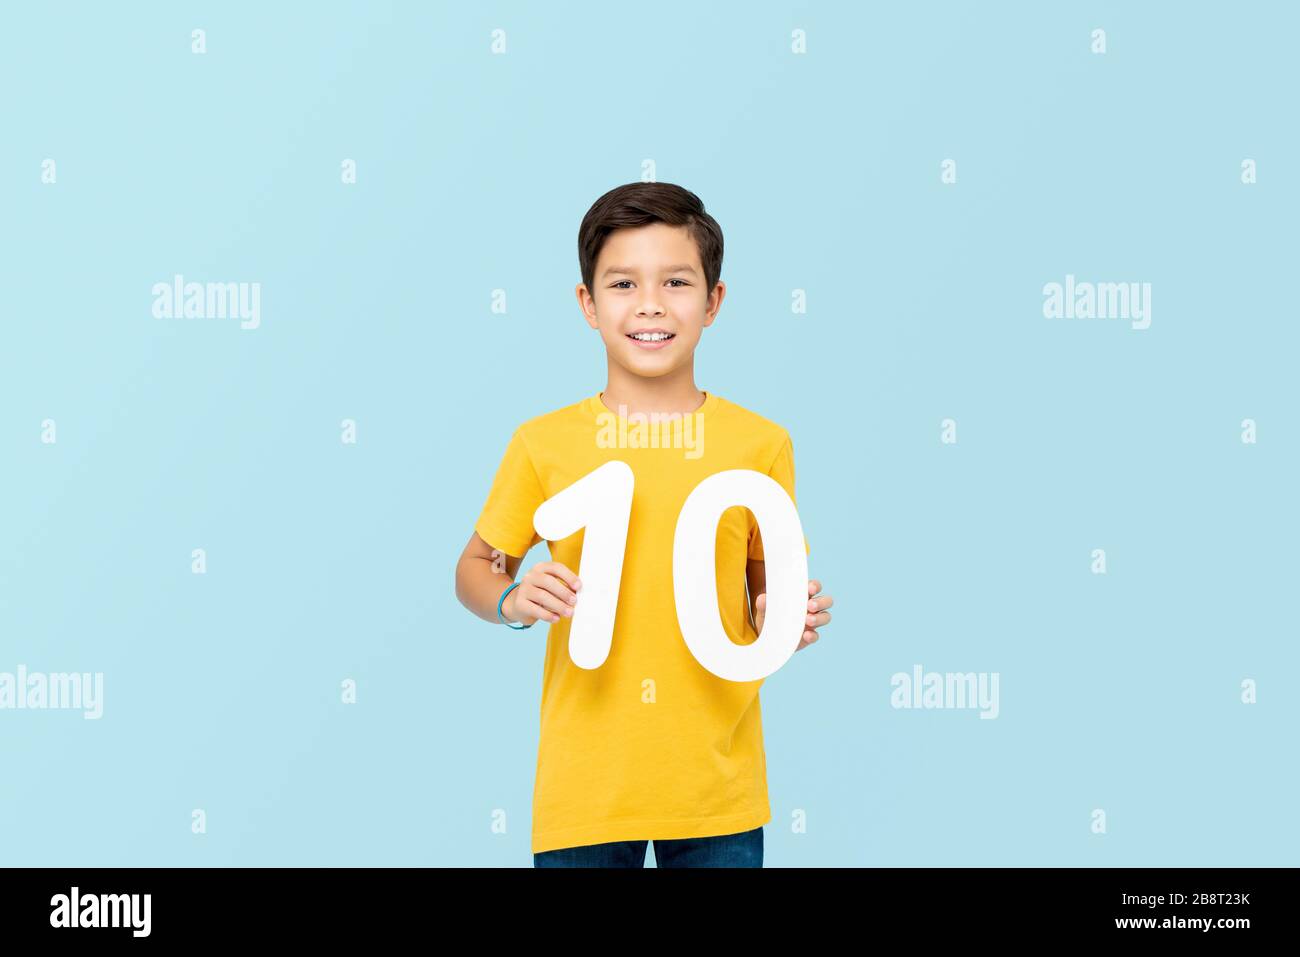 Guapo chico de 10 años de carrera mixta sonriendo y sosteniendo números aislados en el backround azul claro Foto de stock